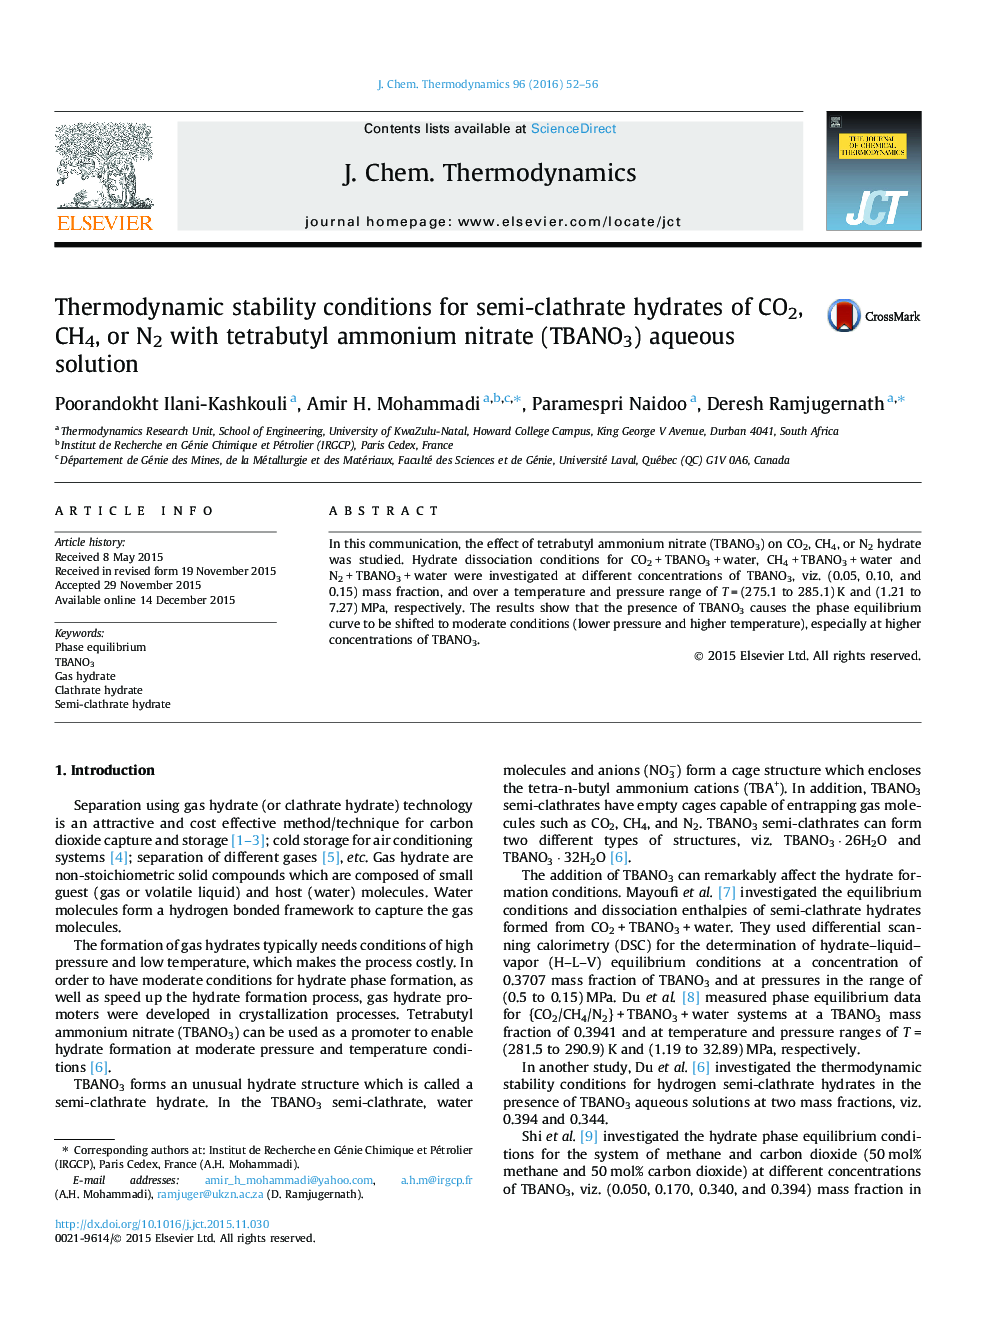 شرایط ثبات ترمودینامیکی برای هیدرات های نیمه clathrate از CO2، CH4، یا N2 با محلول آبی نیترات تترا متیل آمونیوم (NANO3) 